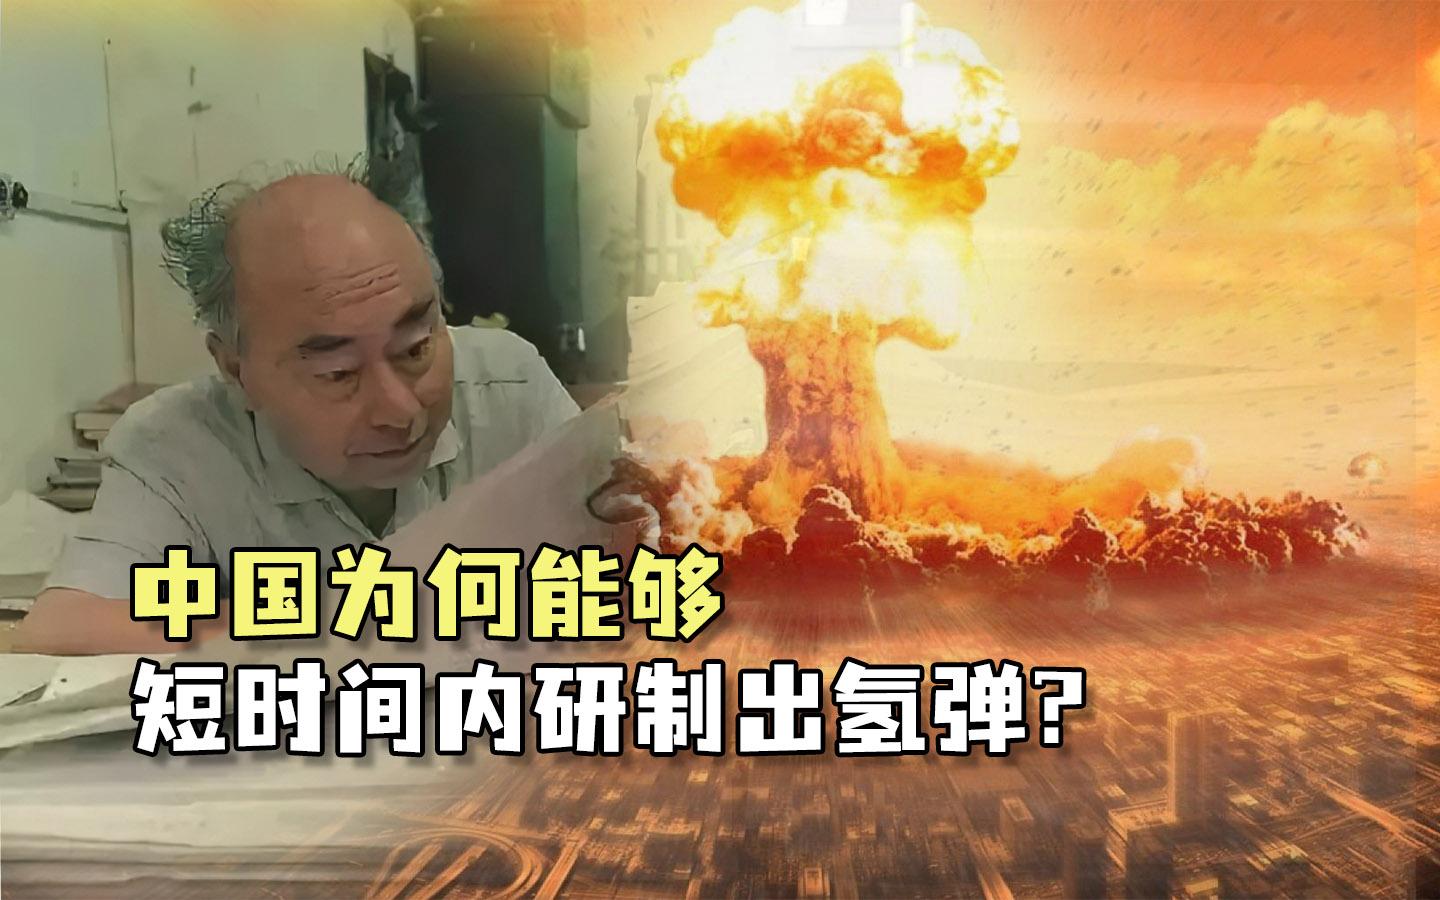 中国当年被美国核威胁究竟靠什么能够短时间研制出氢弹